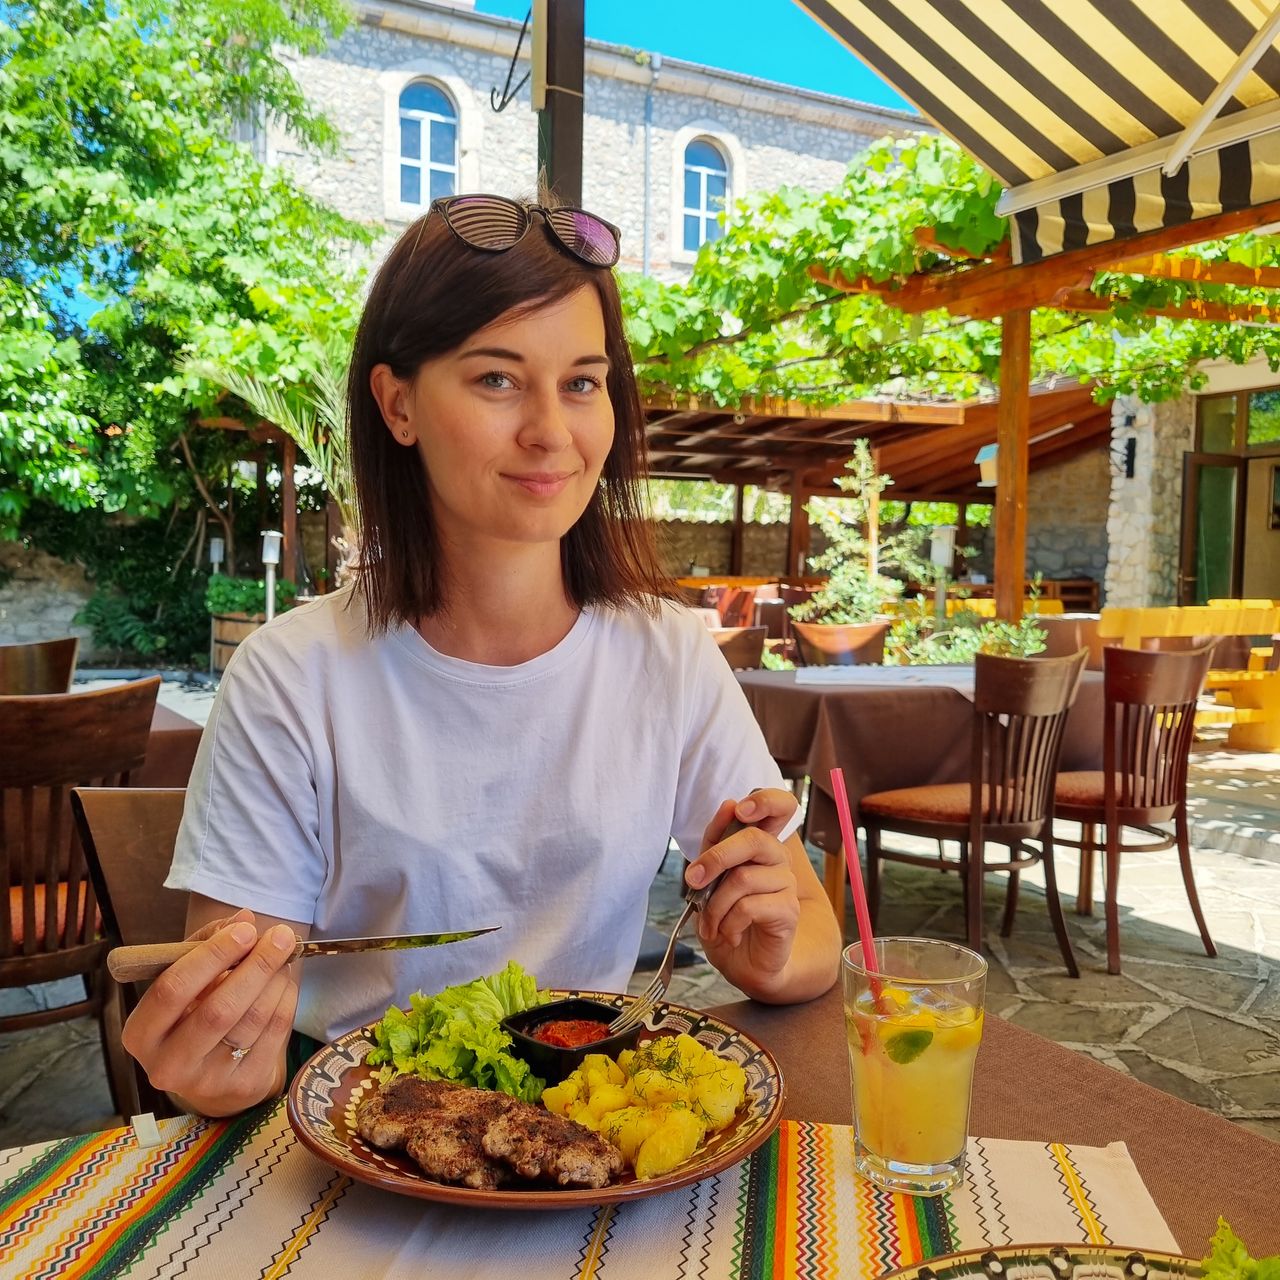 Bułgarskie jedzenie jest pyszne - przekonuje Weronika